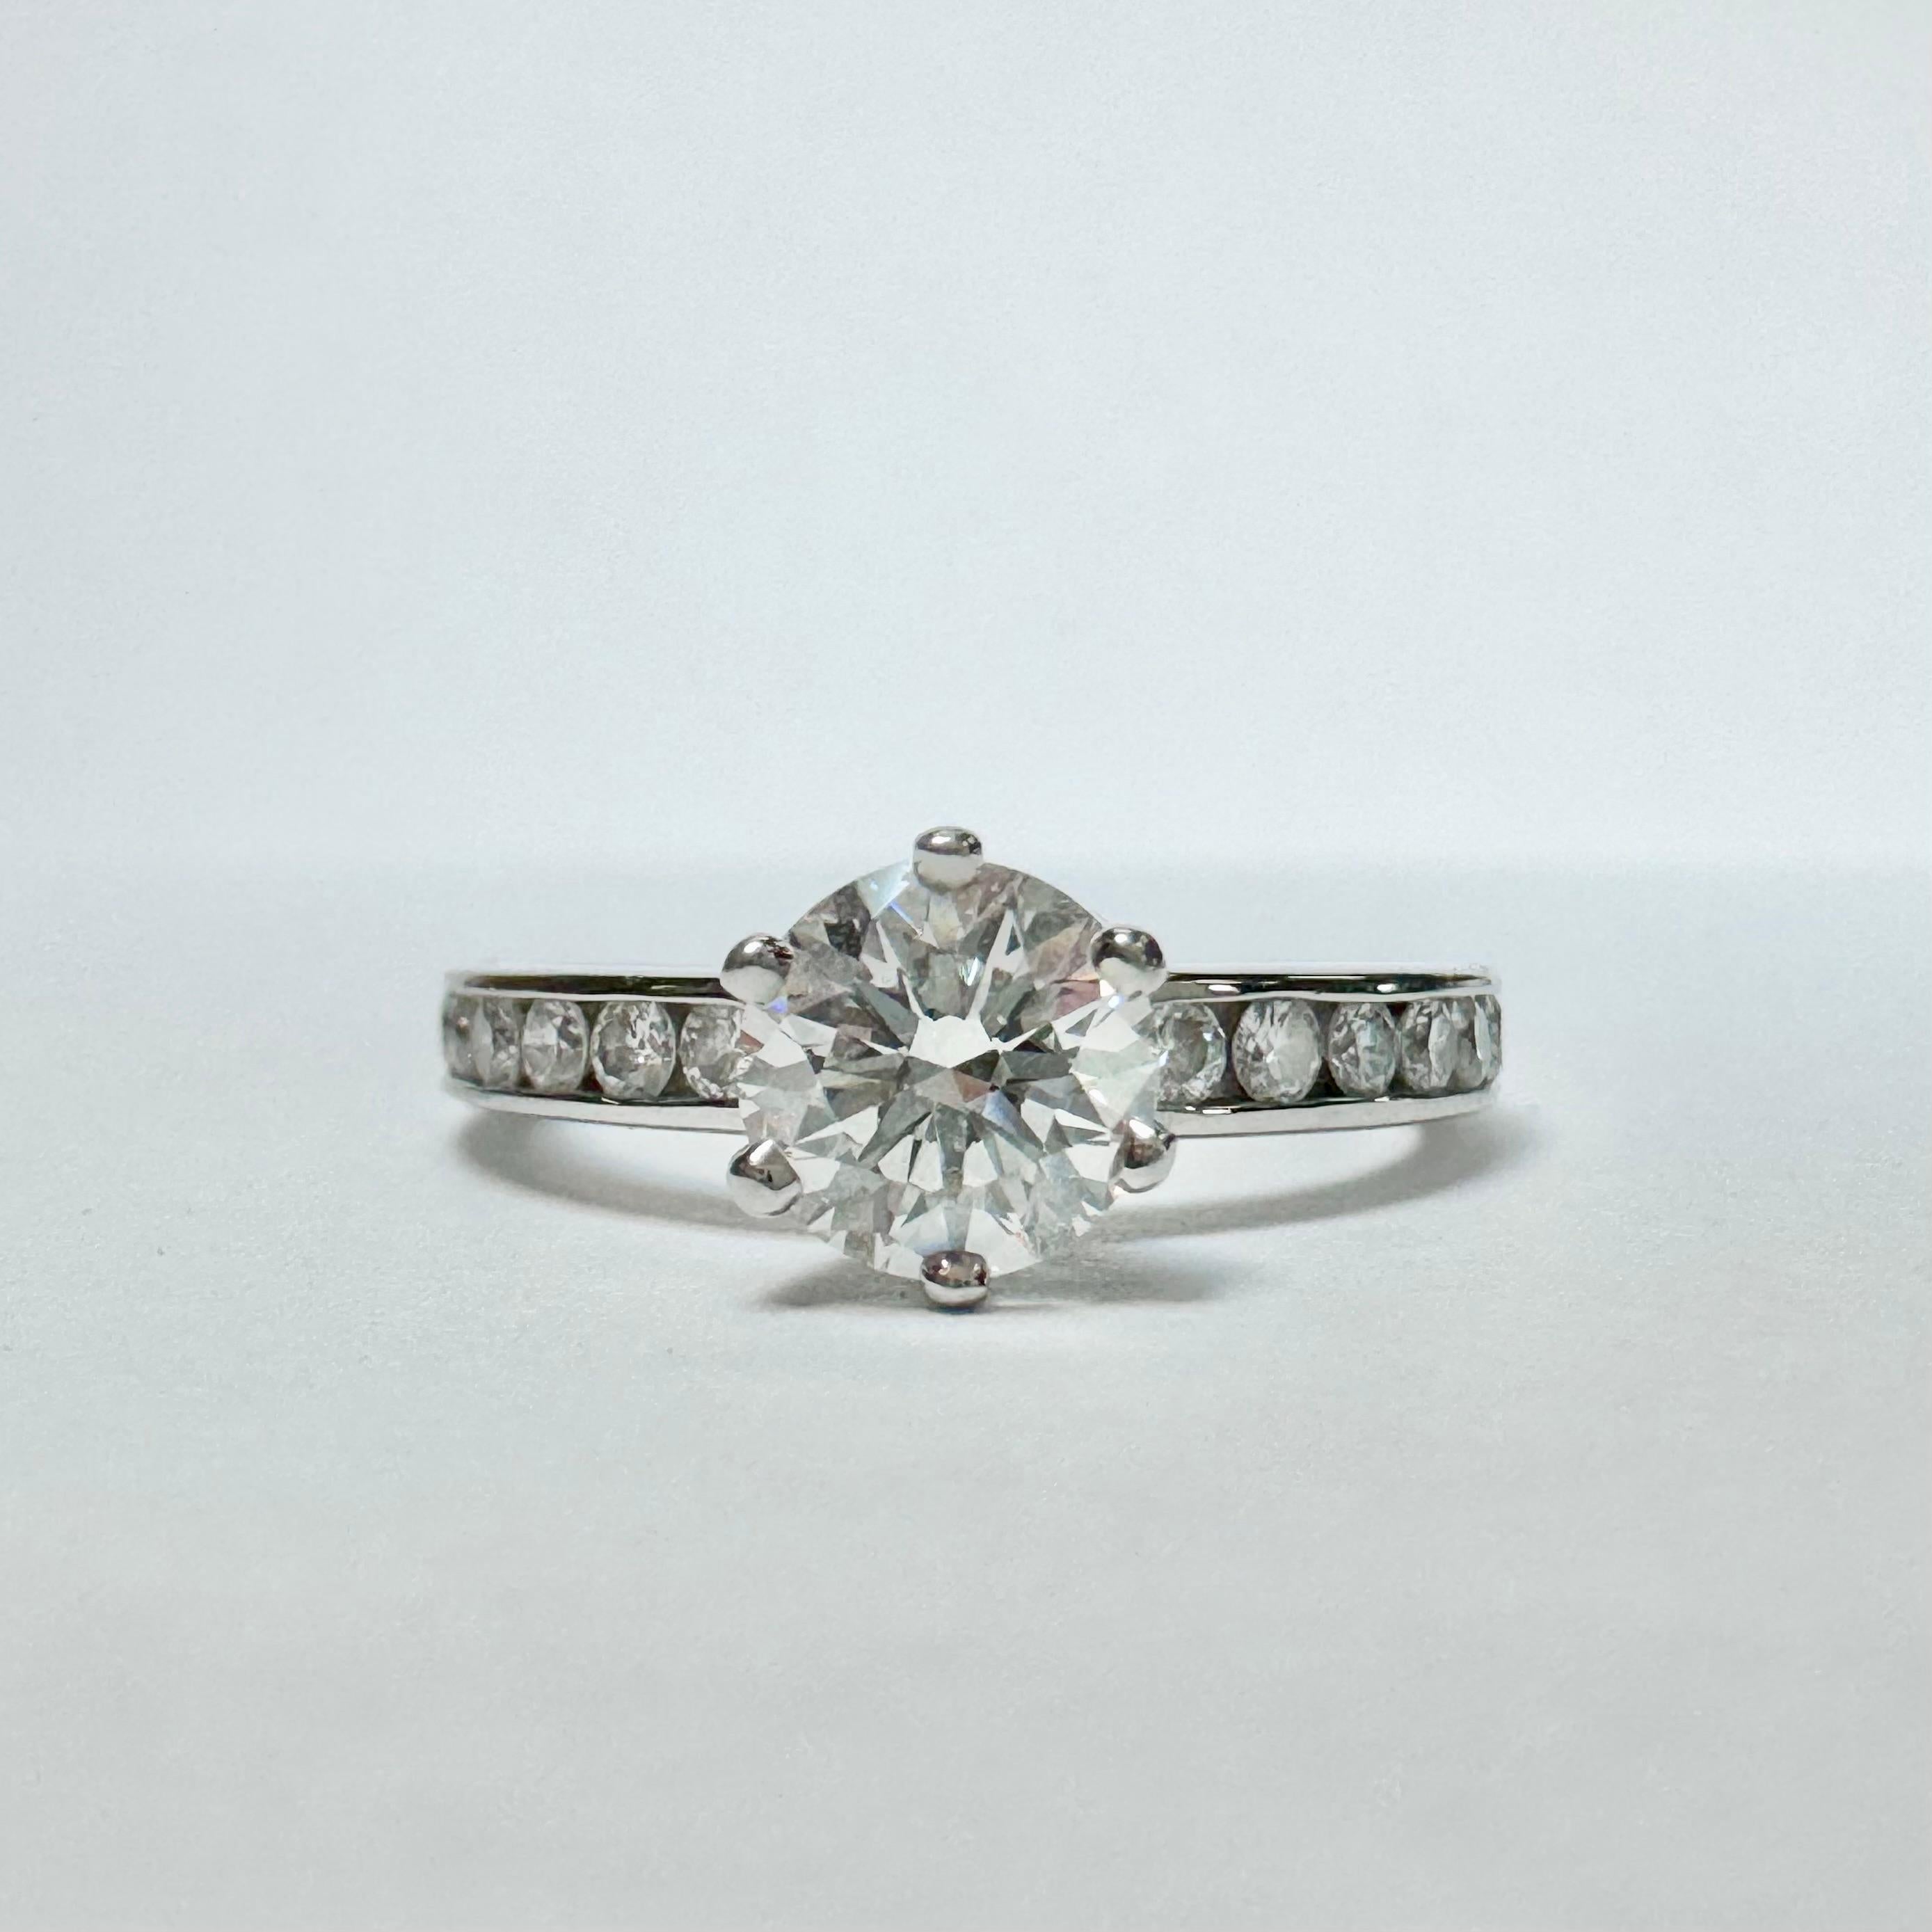 Tiffany & Co. La bague de fiançailles en diamant a une pierre centrale de 0,64ct, avec des diamants d'accentuation sertis en canal dans un anneau en platine massif. Le diamant rond central de taille brillant pèse 0,64ct, a une taille de  Couleur F